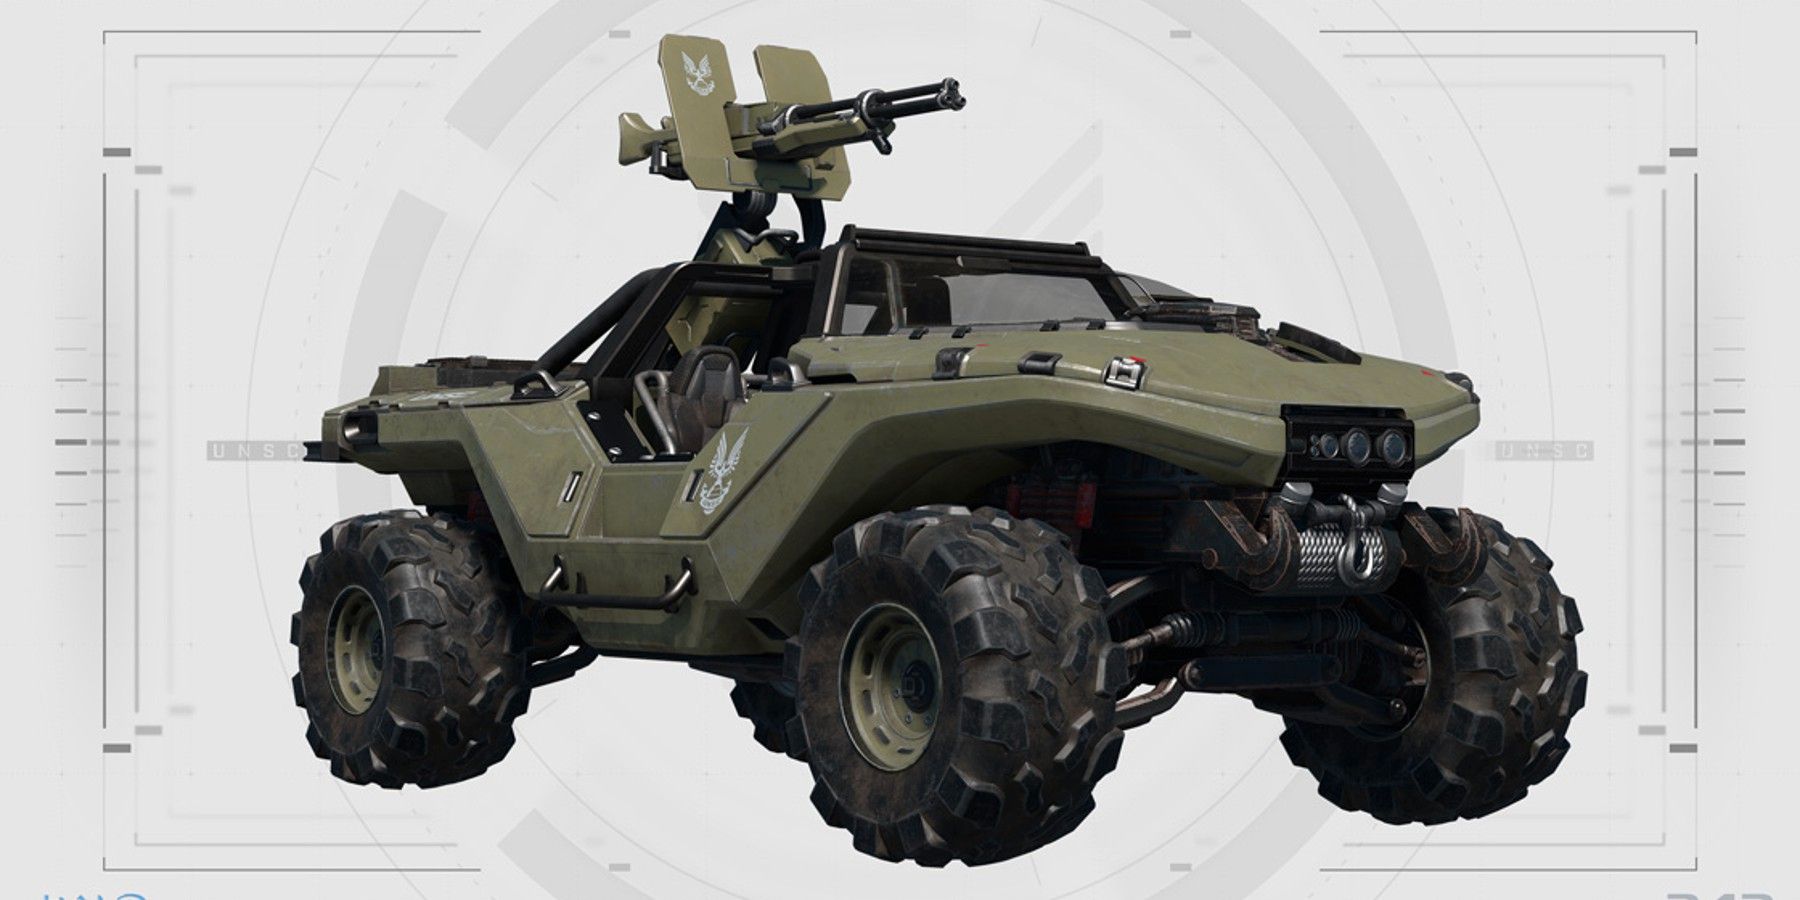 Το Halo Infinite εισάγει ένα σύστημα δυναμικής βλάβης για οχήματα